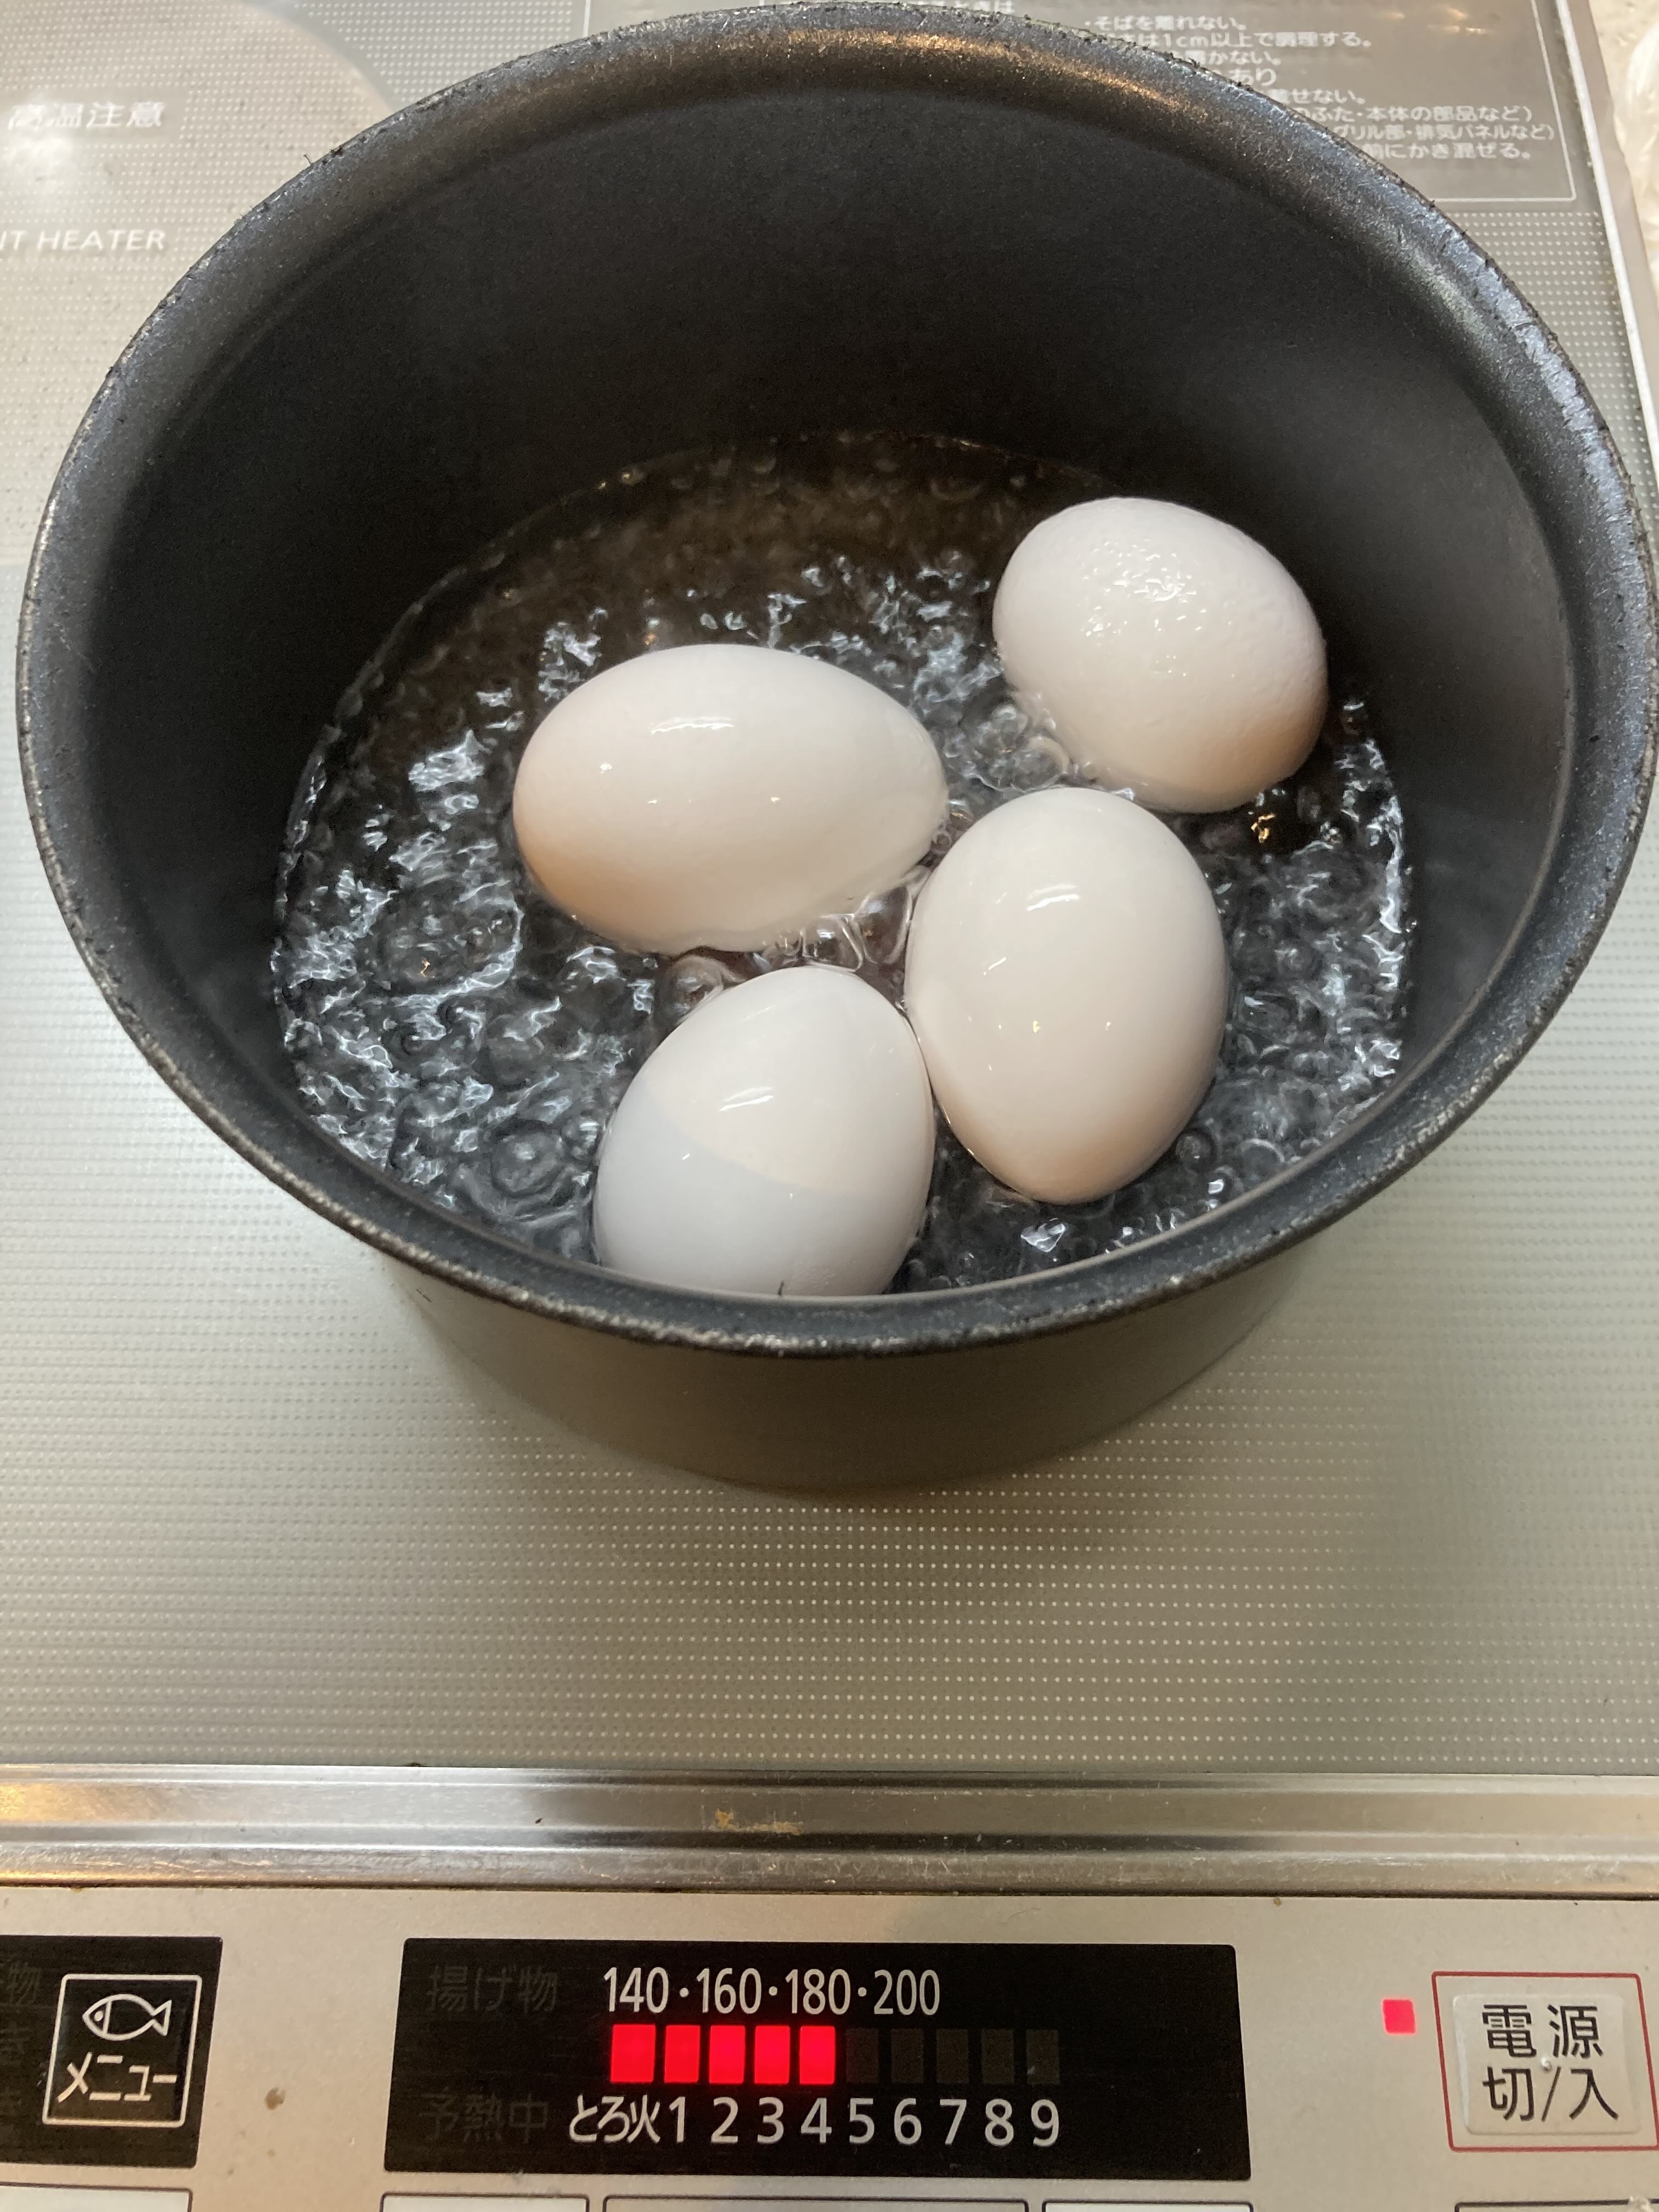 鍋で茹でている卵が5つあり、前面には温度設定表示がある。